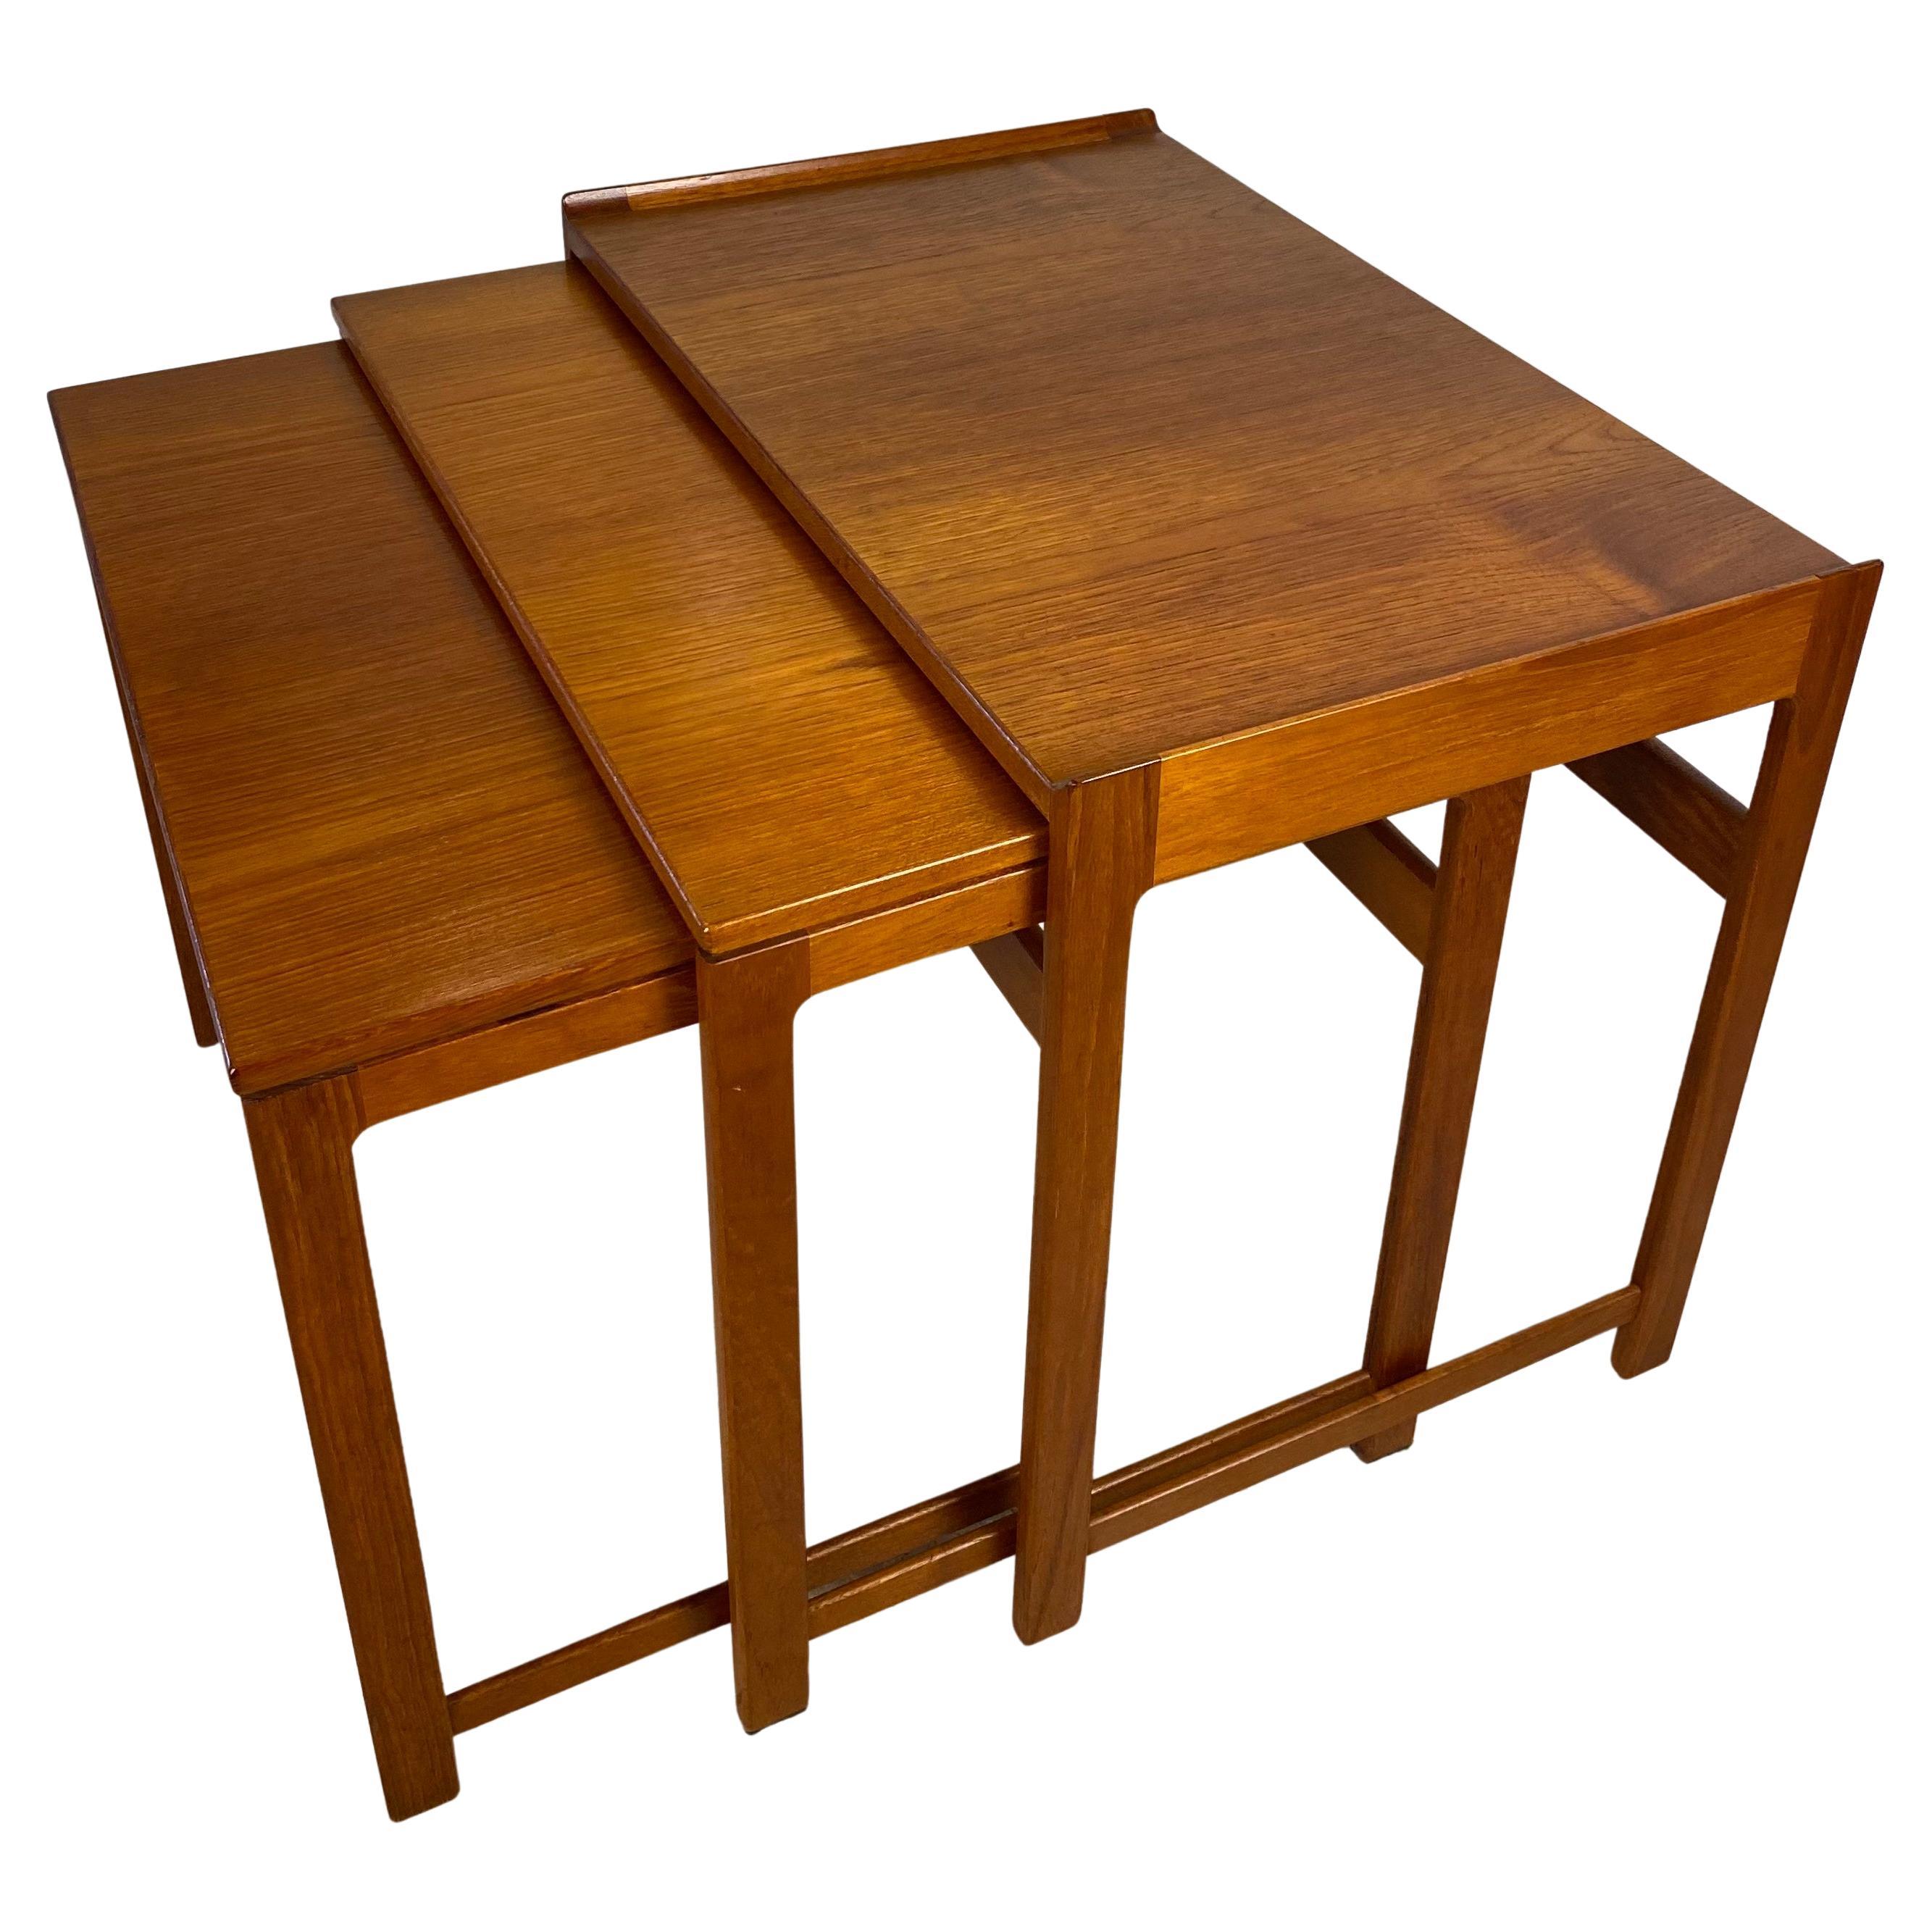 3 Midcentury Holz Verschachtelung Tische oder Gigogne End Tables Hans J. Wegner Style